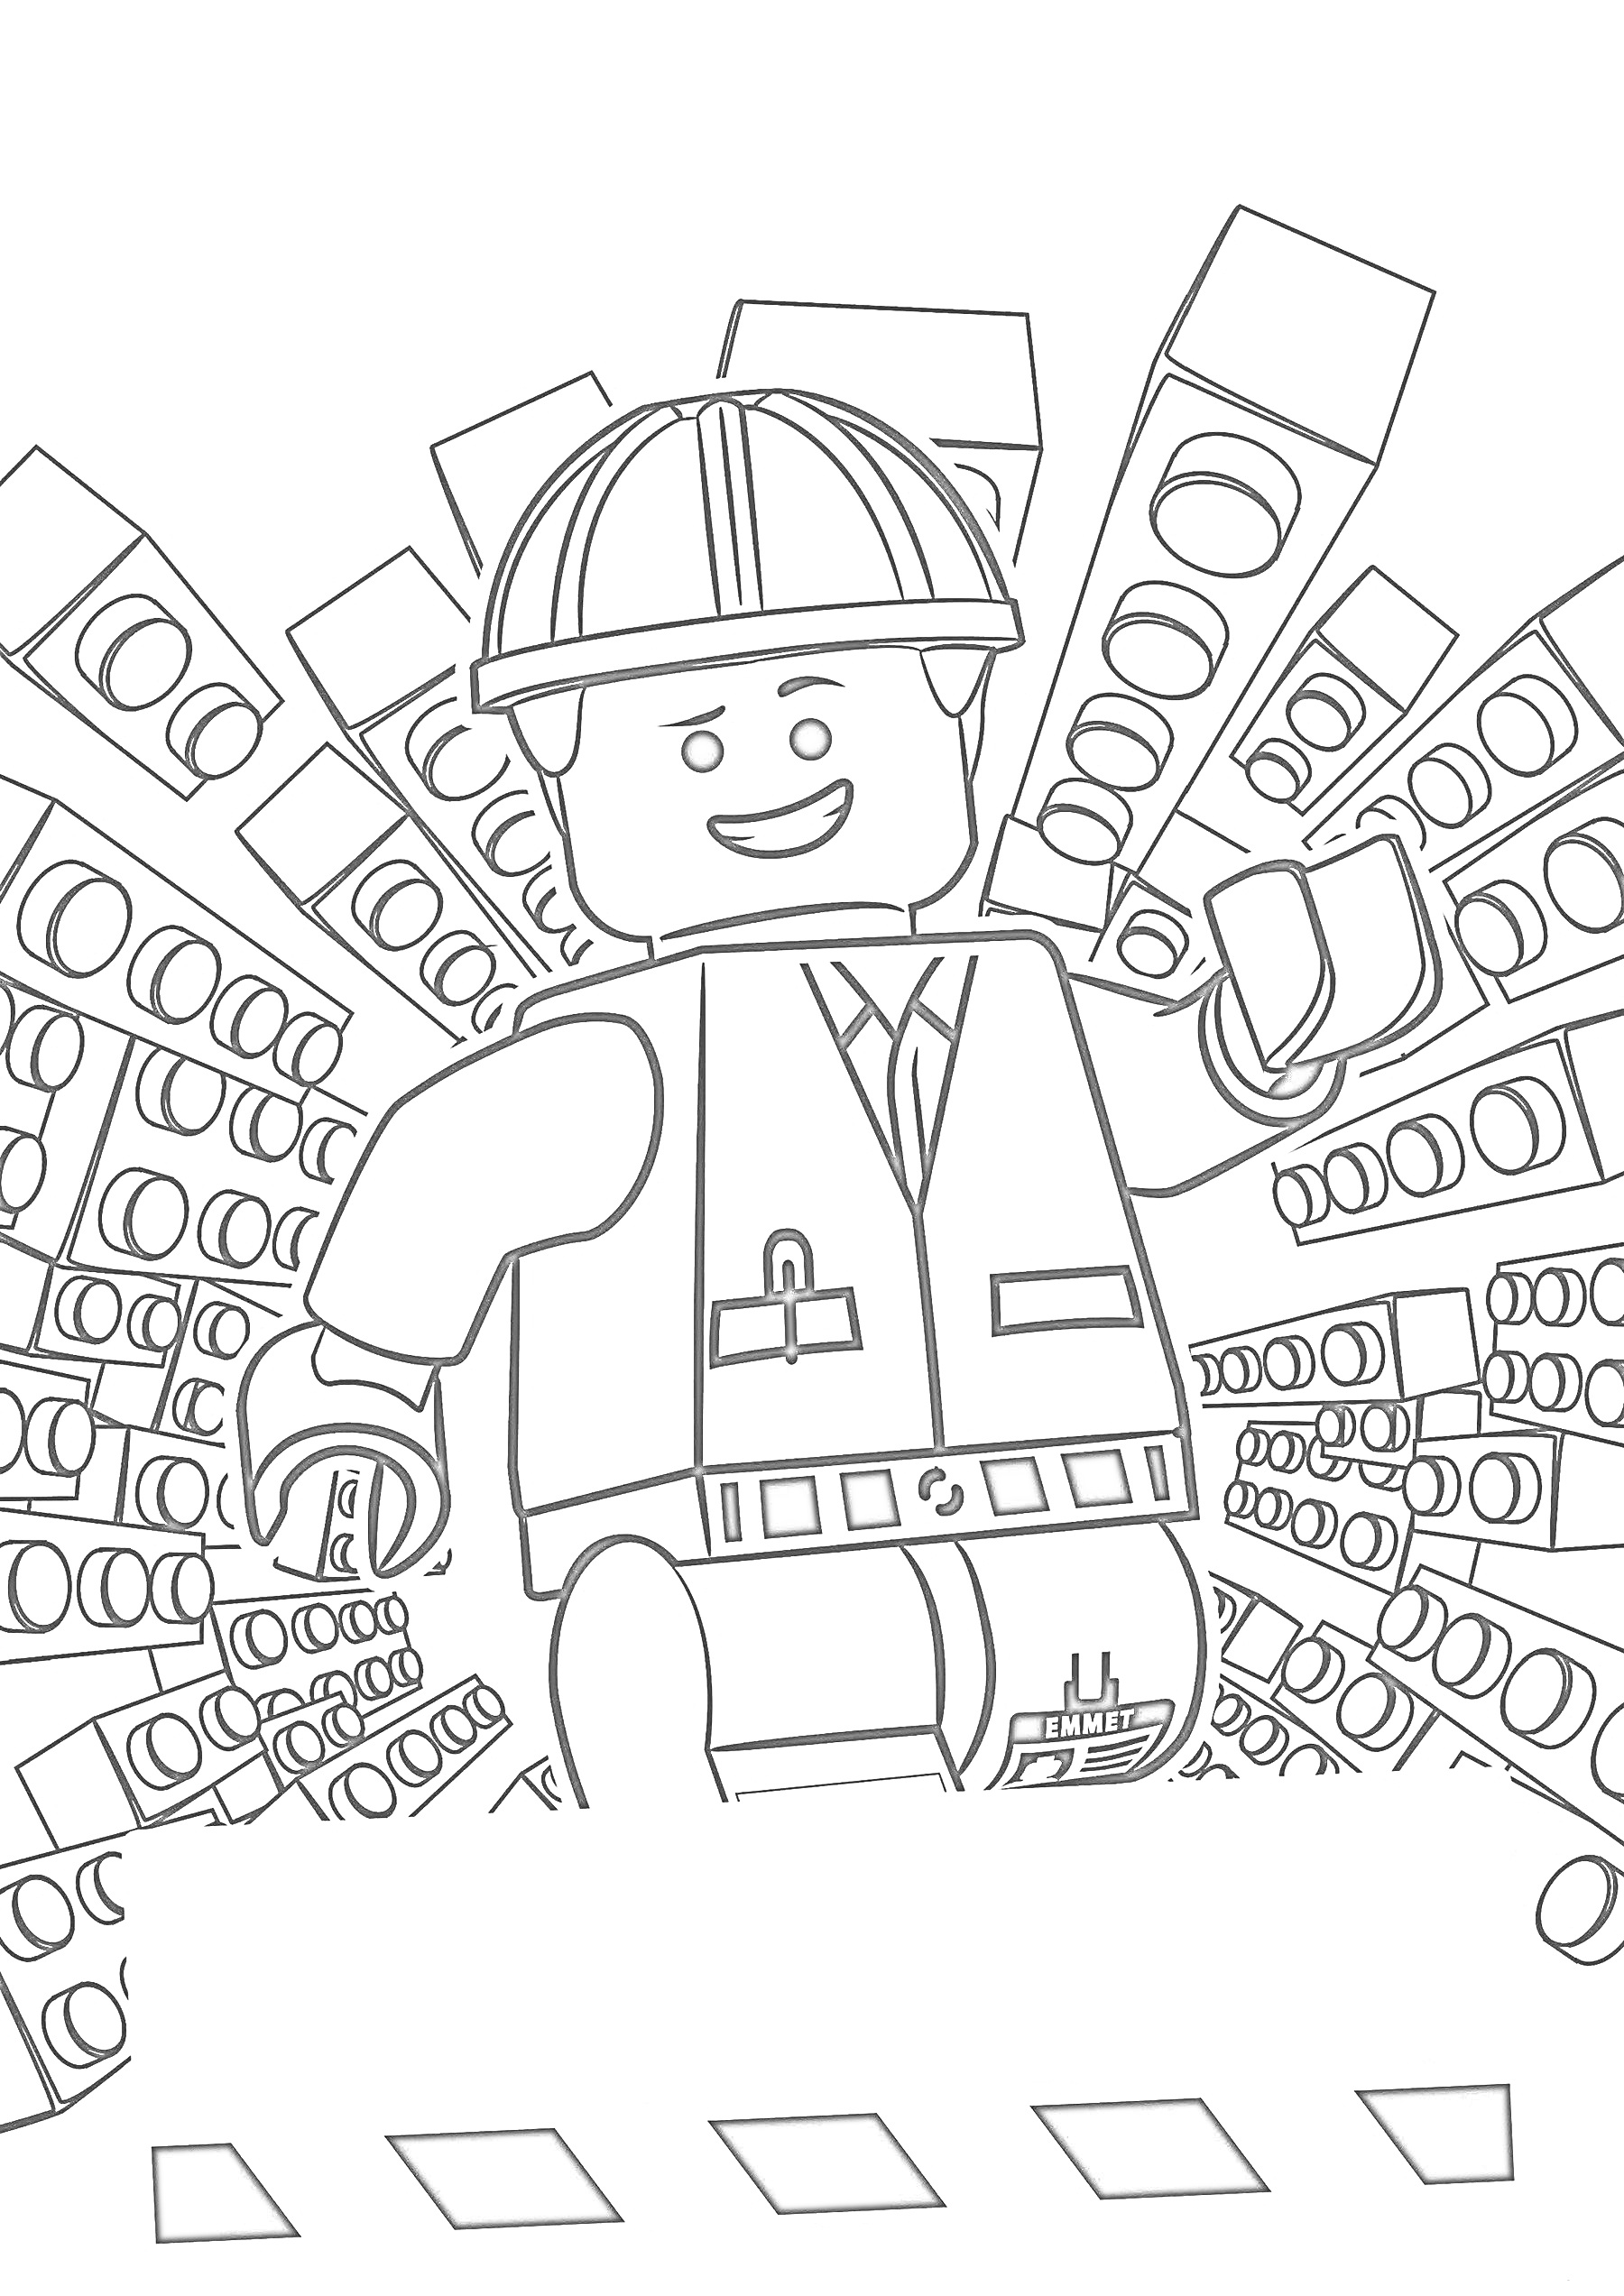 Раскраска Лего человек в строительной форме, каска, фоновый узор из блоков Лего, приветственный жест рукой